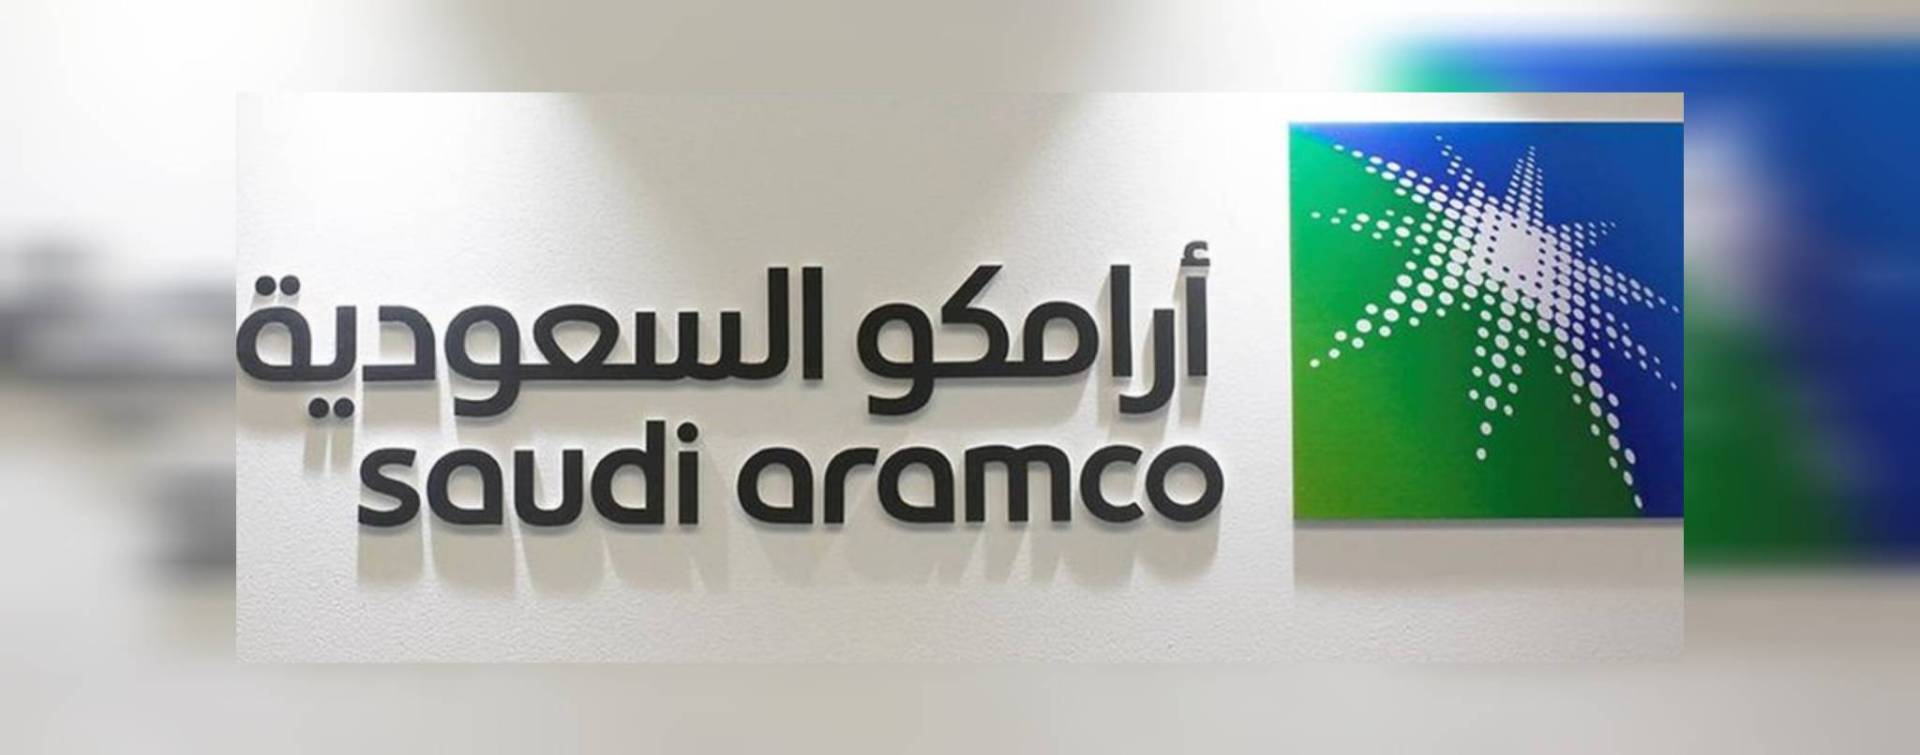 السعودية: خبراء الأمم المتحدة يتَحَدون شركة النفط العملاقة أرامكو 